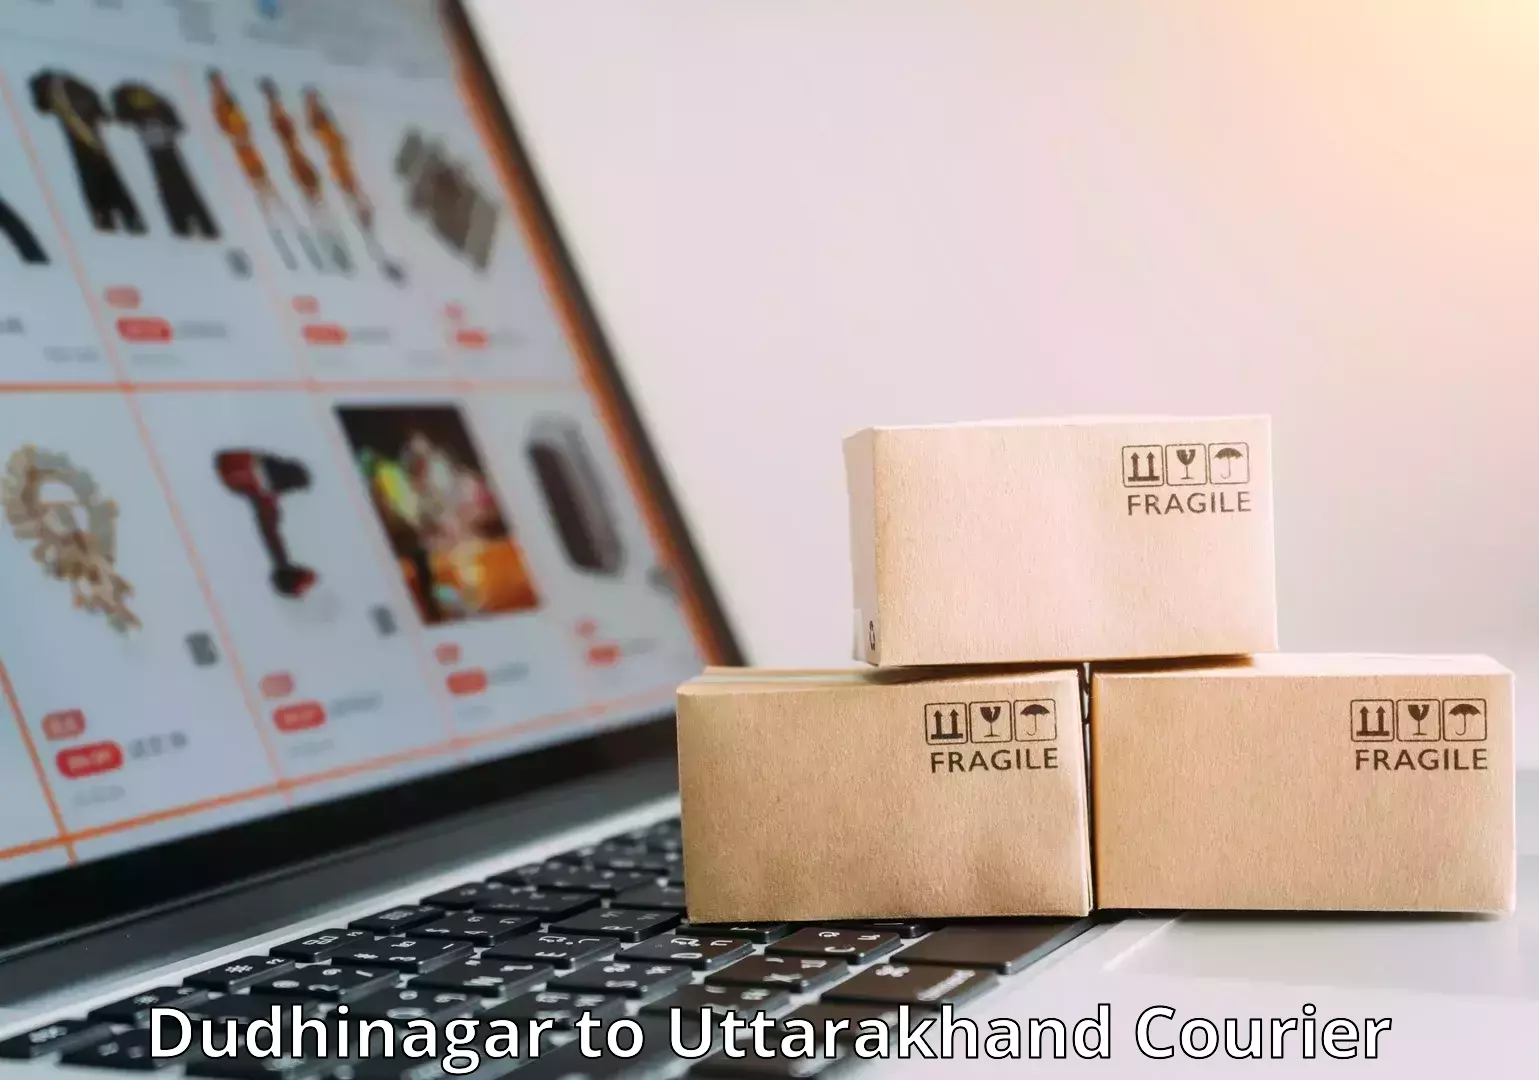 Customized luggage delivery Dudhinagar to Uttarakhand